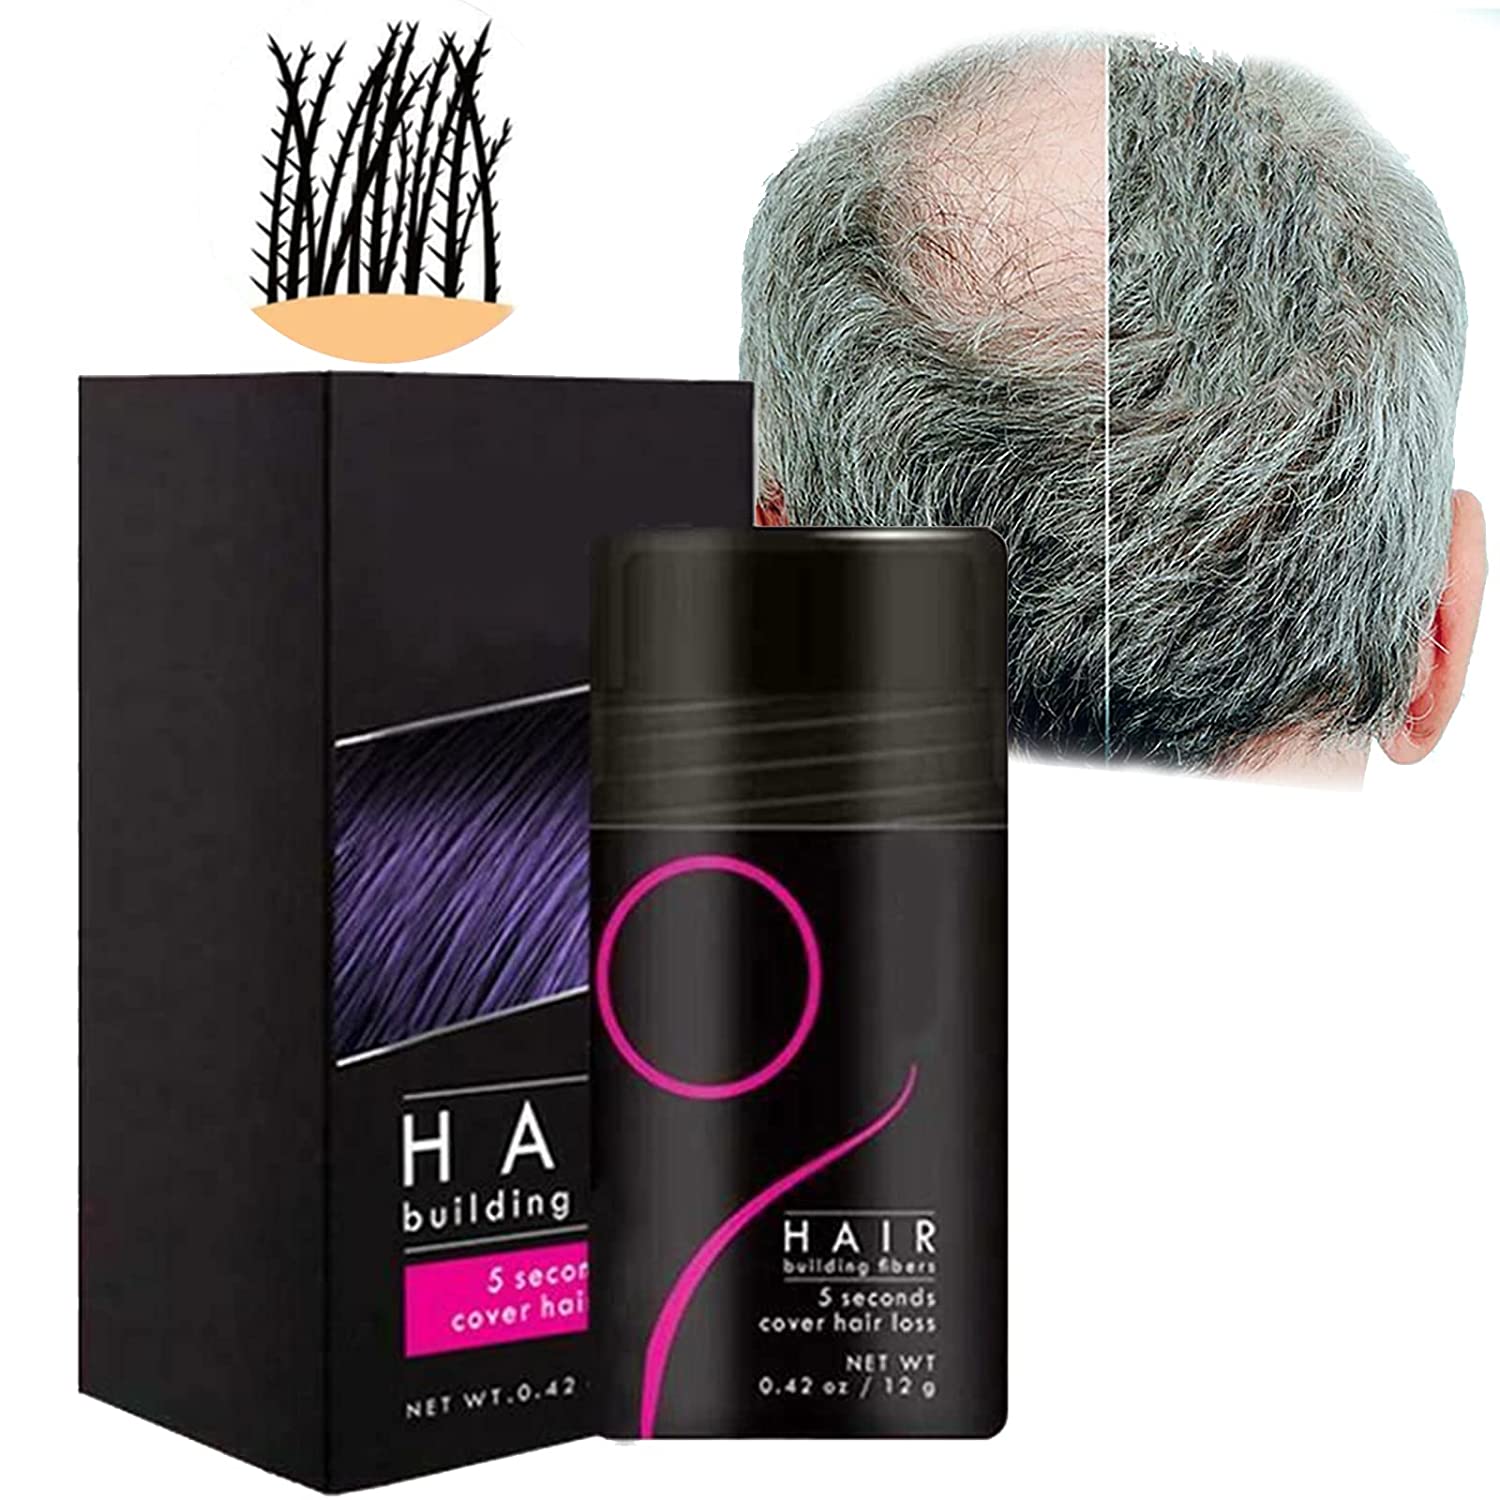 49% Off - Fluffup secret hair fiber powder-Effective hair supplement